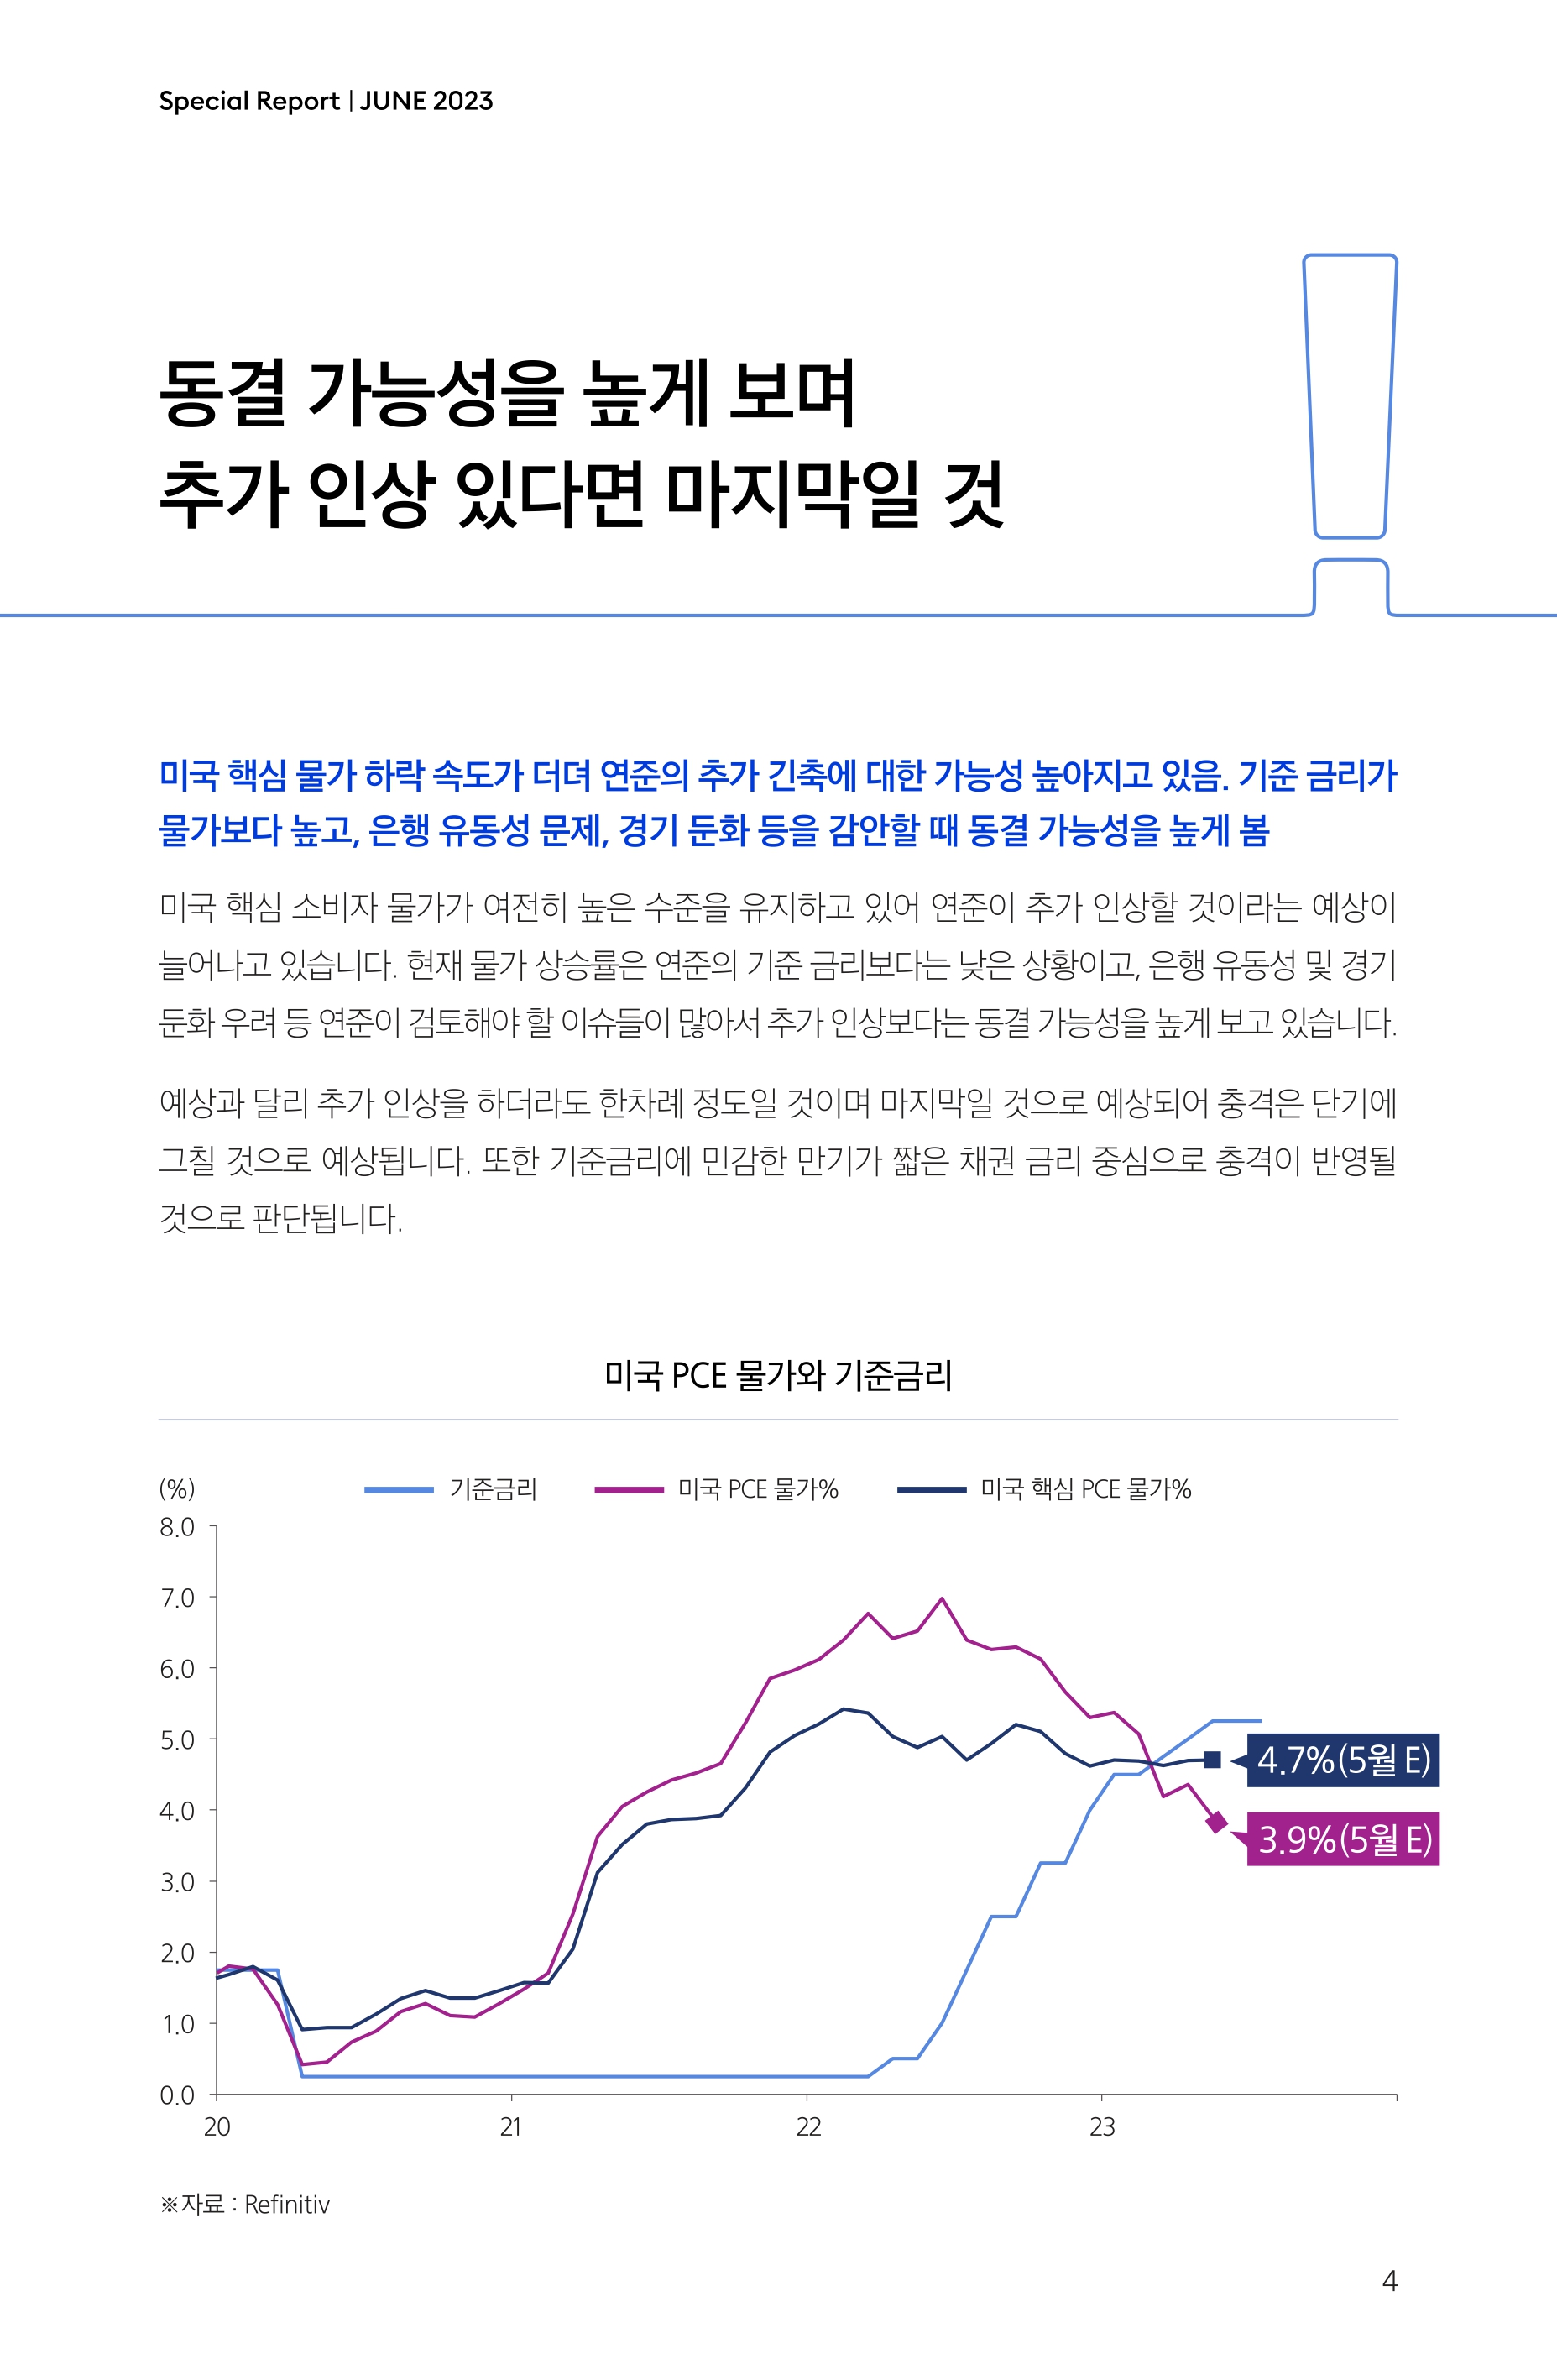 Samsung Global Market Outlook(낱장)_202306_page-0004.jpg